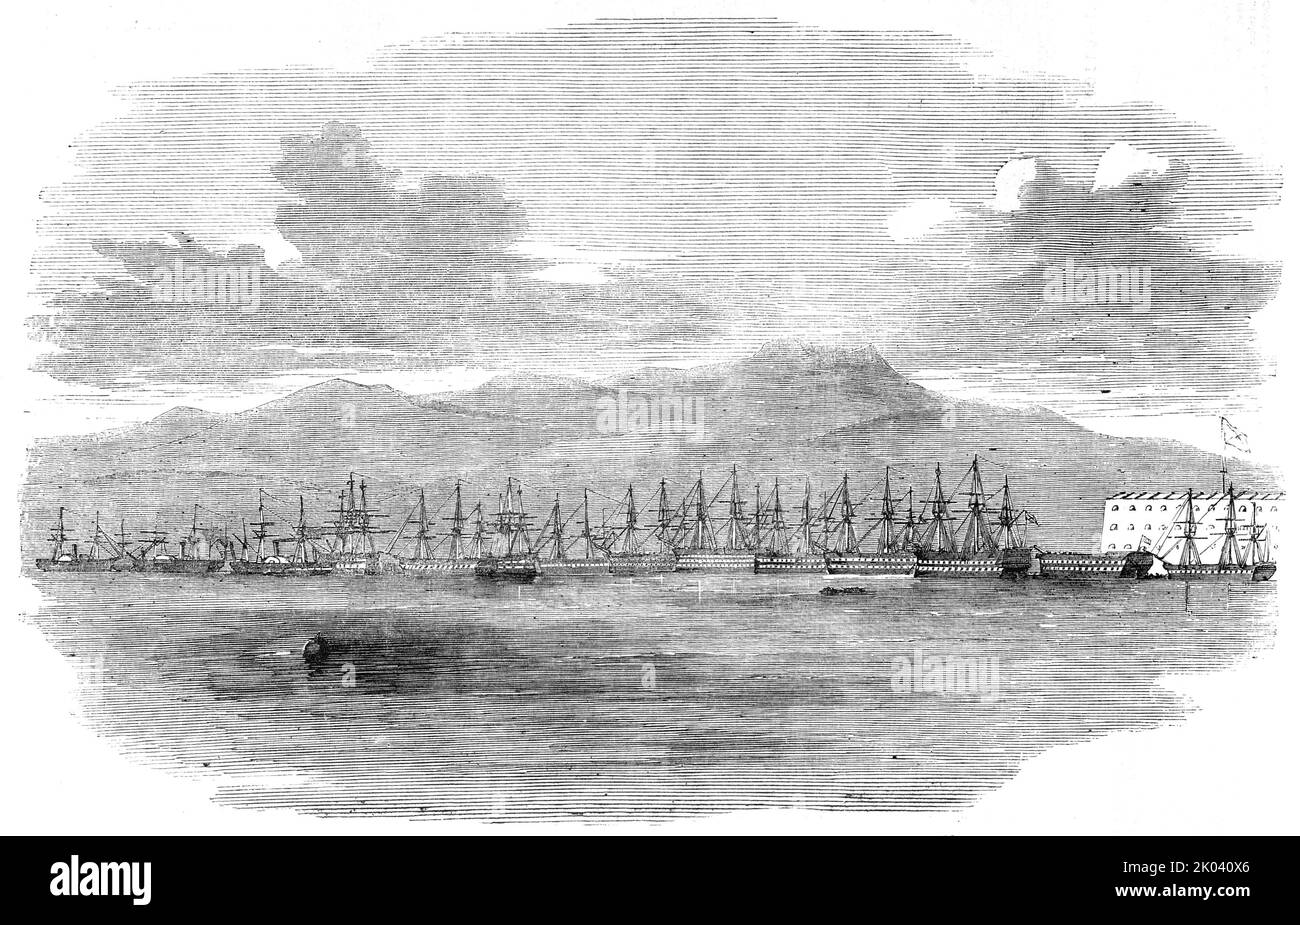 Die russische Flotte vertäute vor den Batterien von Sebastopol, unter den Gewehren, 22. September 1854. Krimkrieg. Kriegsschiffe am Schwarzen Meer verteidigen die strategische Hafenstadt. Aus „Illustrated London News“, 1854. Stockfoto